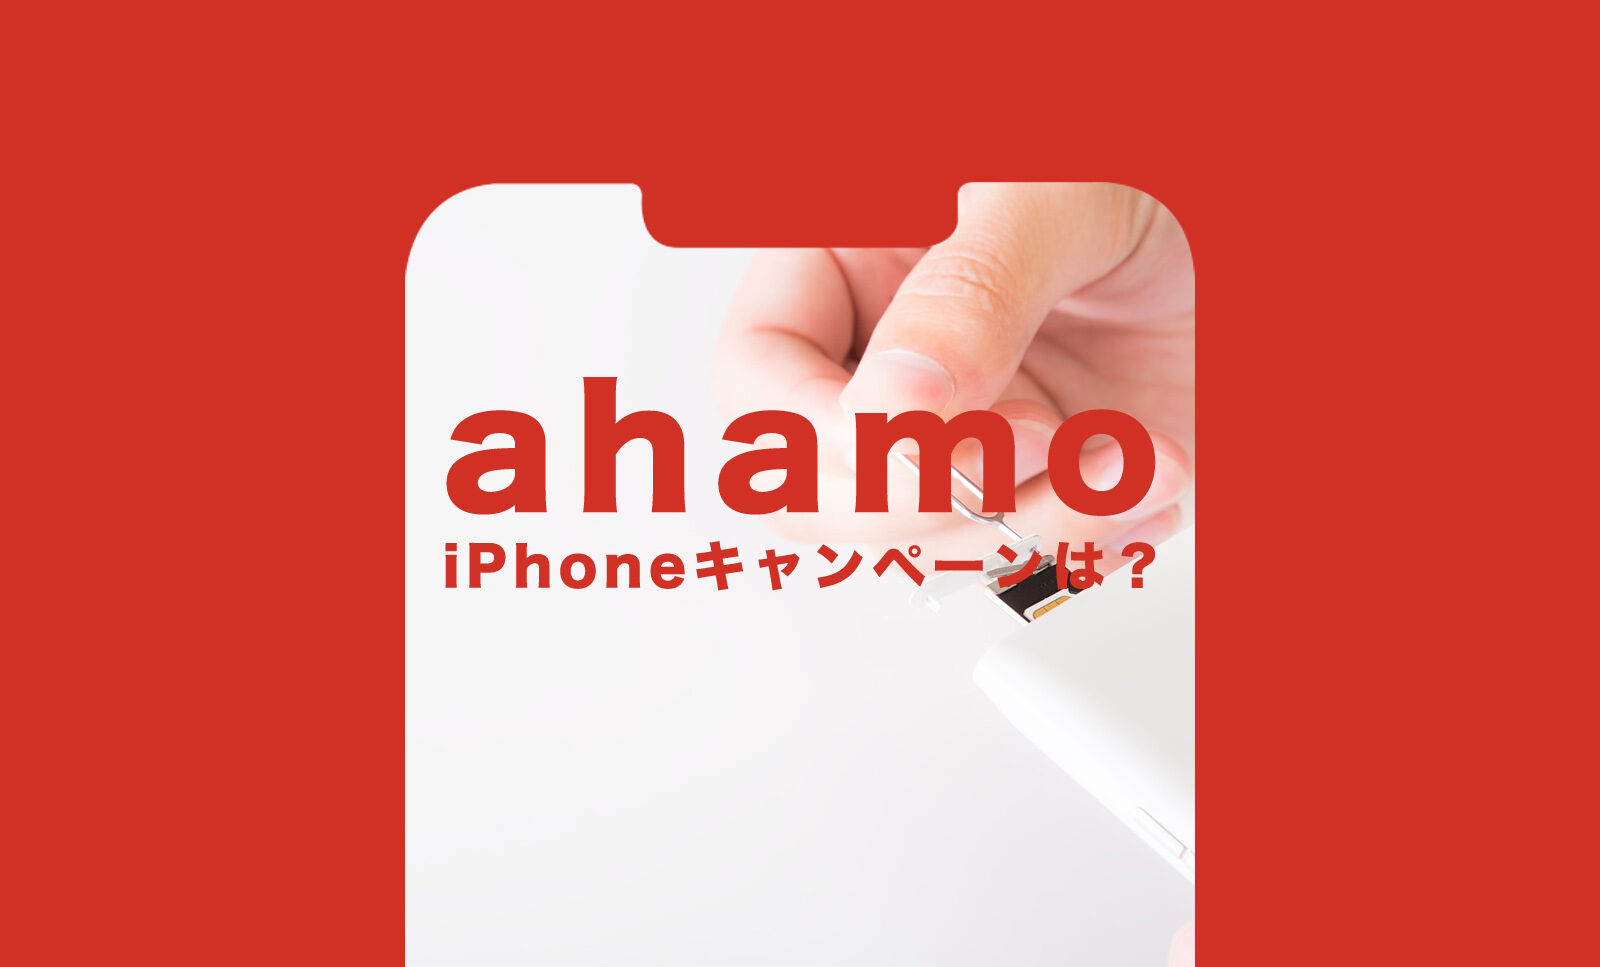 ahamo(アハモ)のキャンペーンでiPhone11やSE2(第2世代)が安くなるものはある？のサムネイル画像